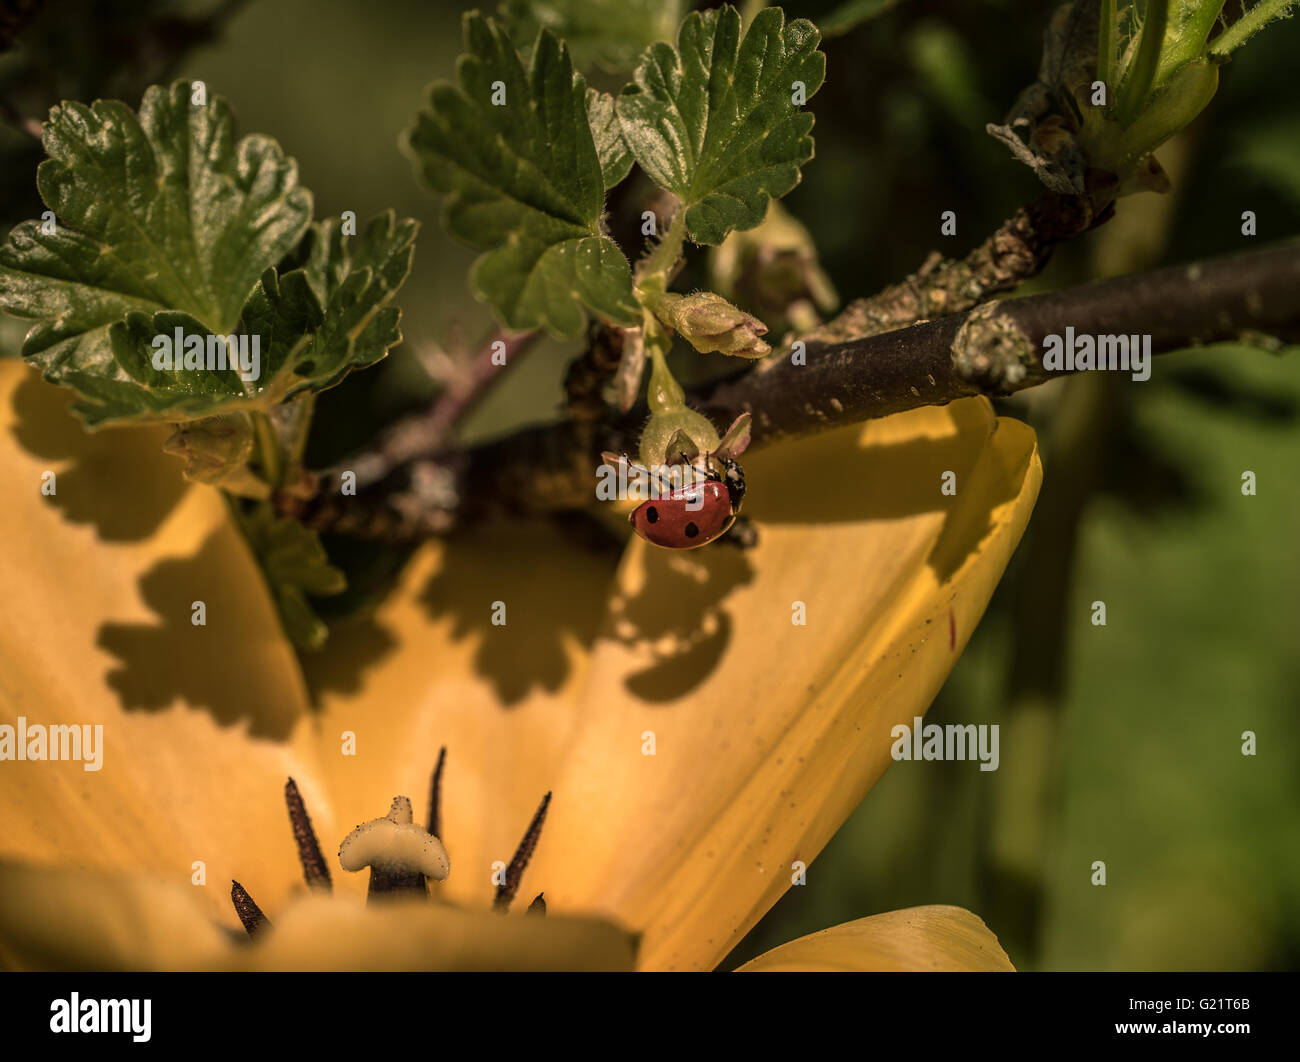 Ladybug arrastrándose boca abajo casting sombra en una flor amarilla Foto de stock